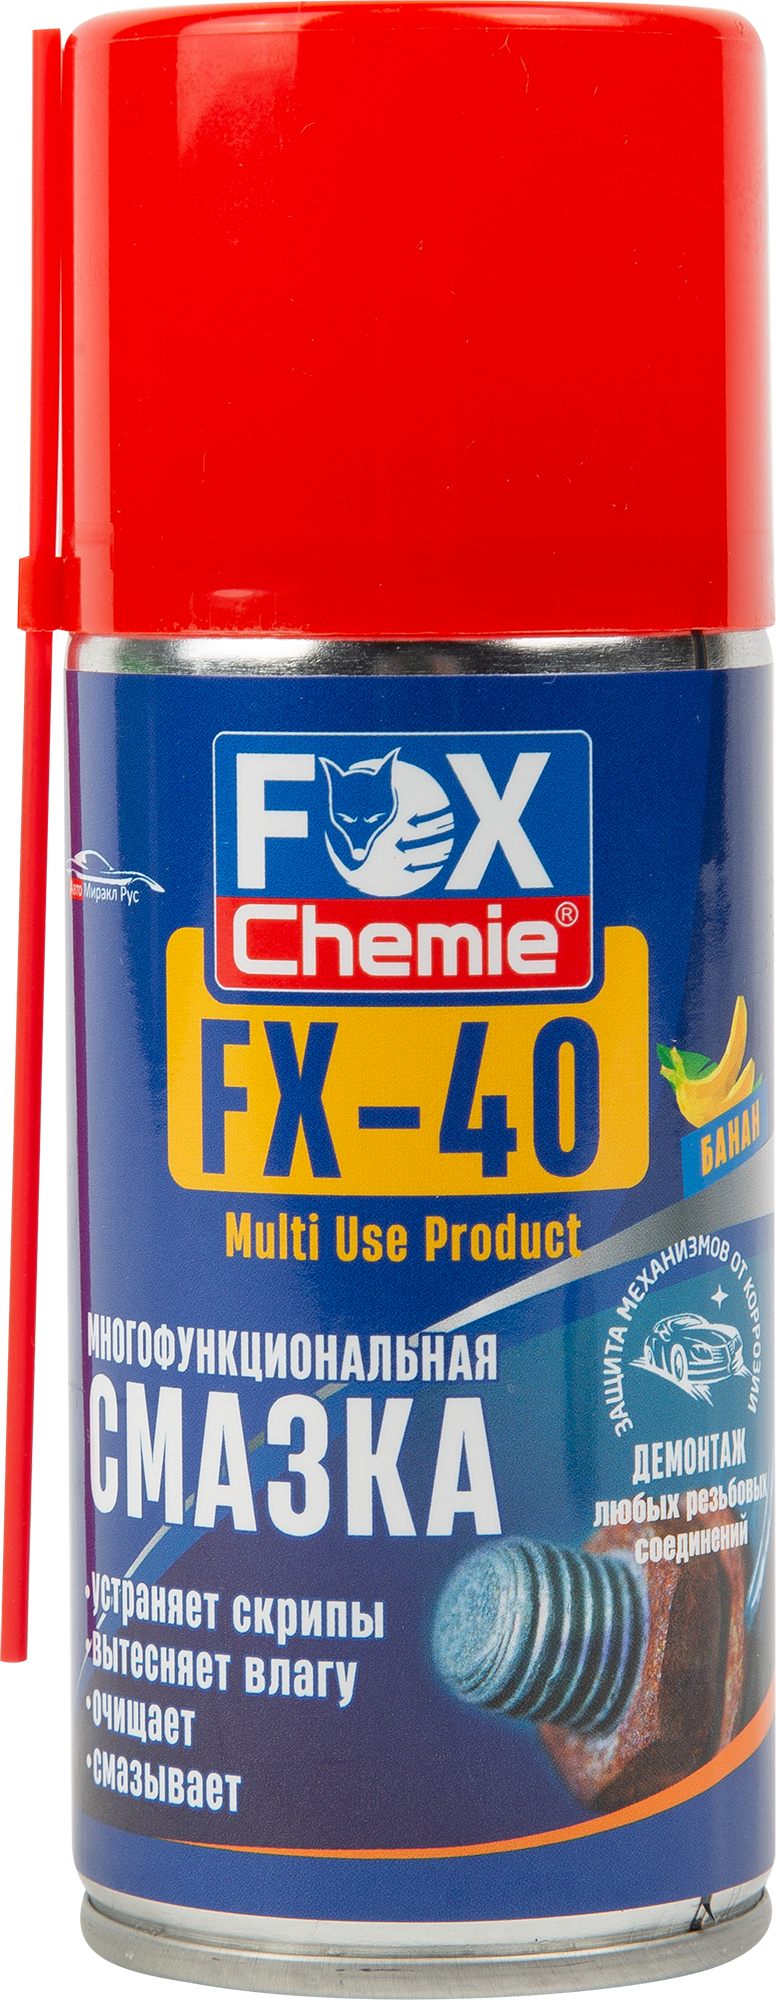 Fox chemie